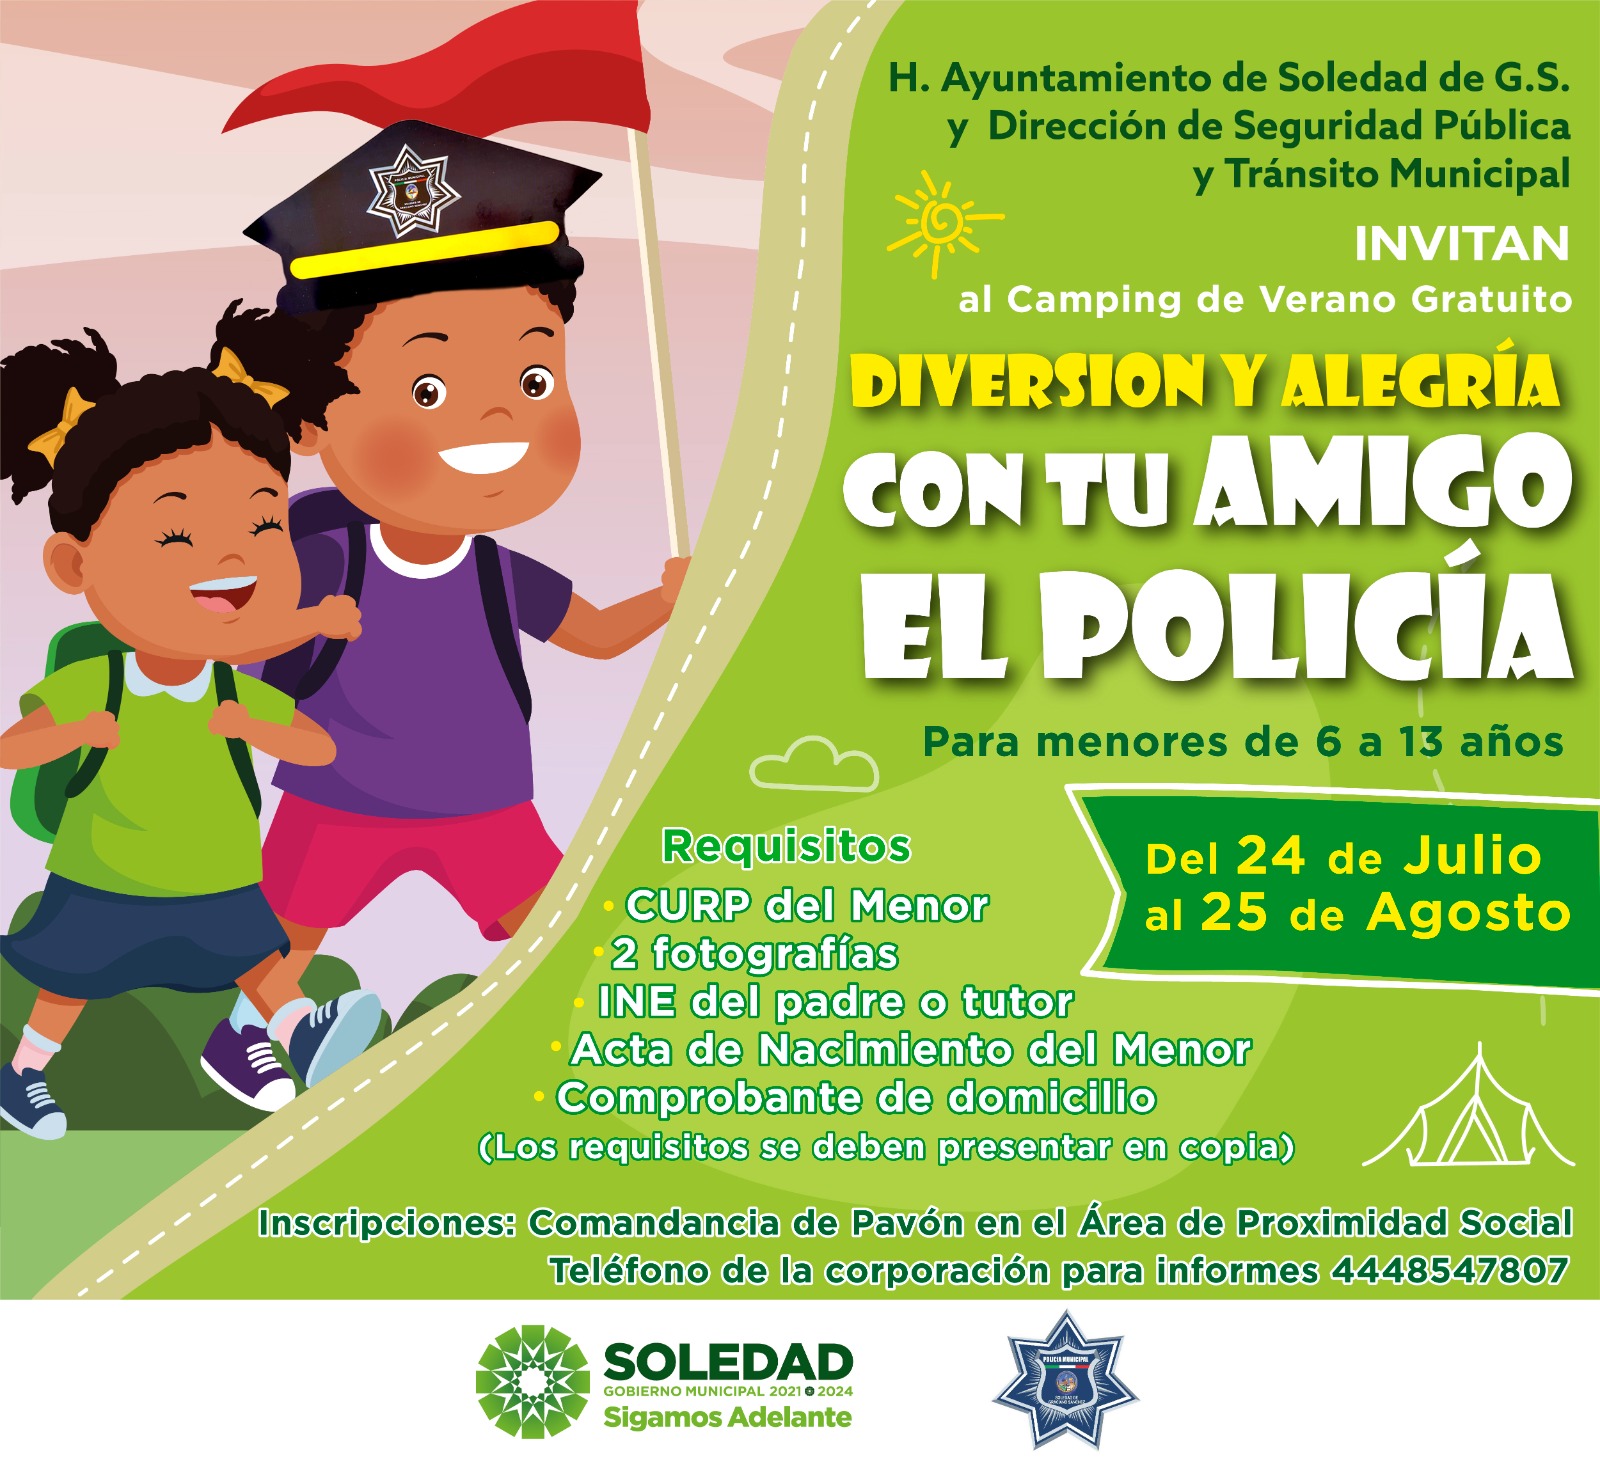 Proximidad Social realizarán actividades y visitas con las y los menores, además dedicarán una semana para hijos de policías soledenses.